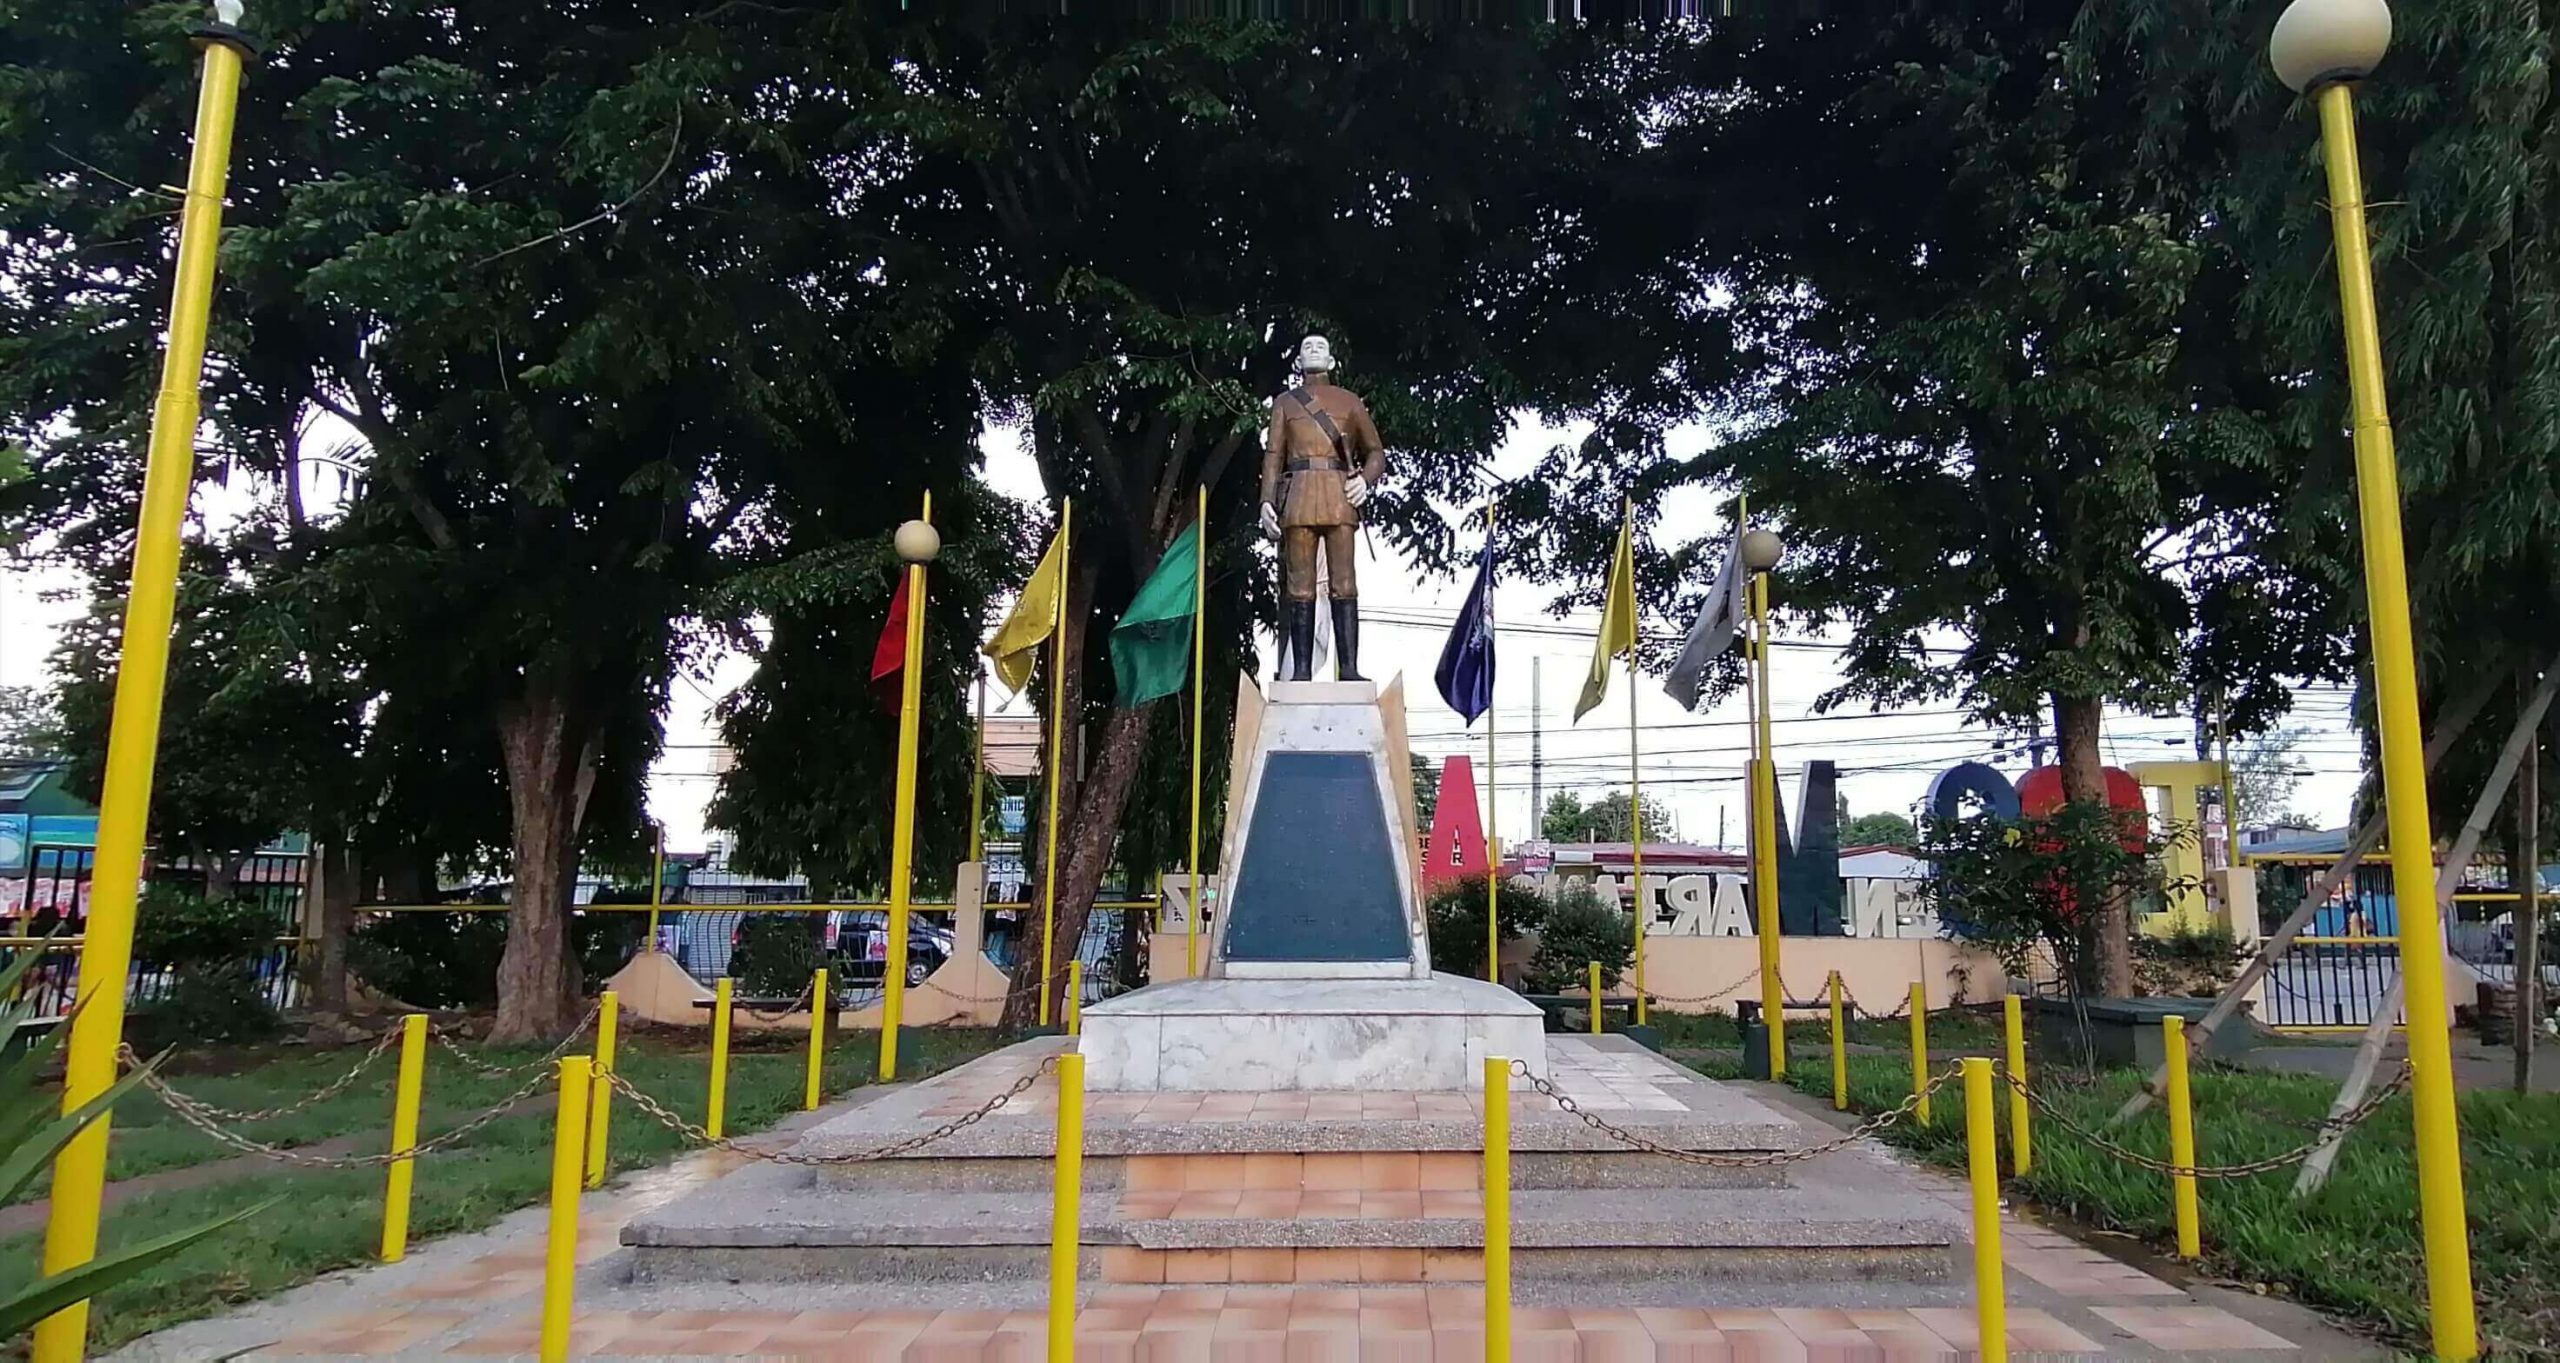 Gen. Mariano Alvarez Monument